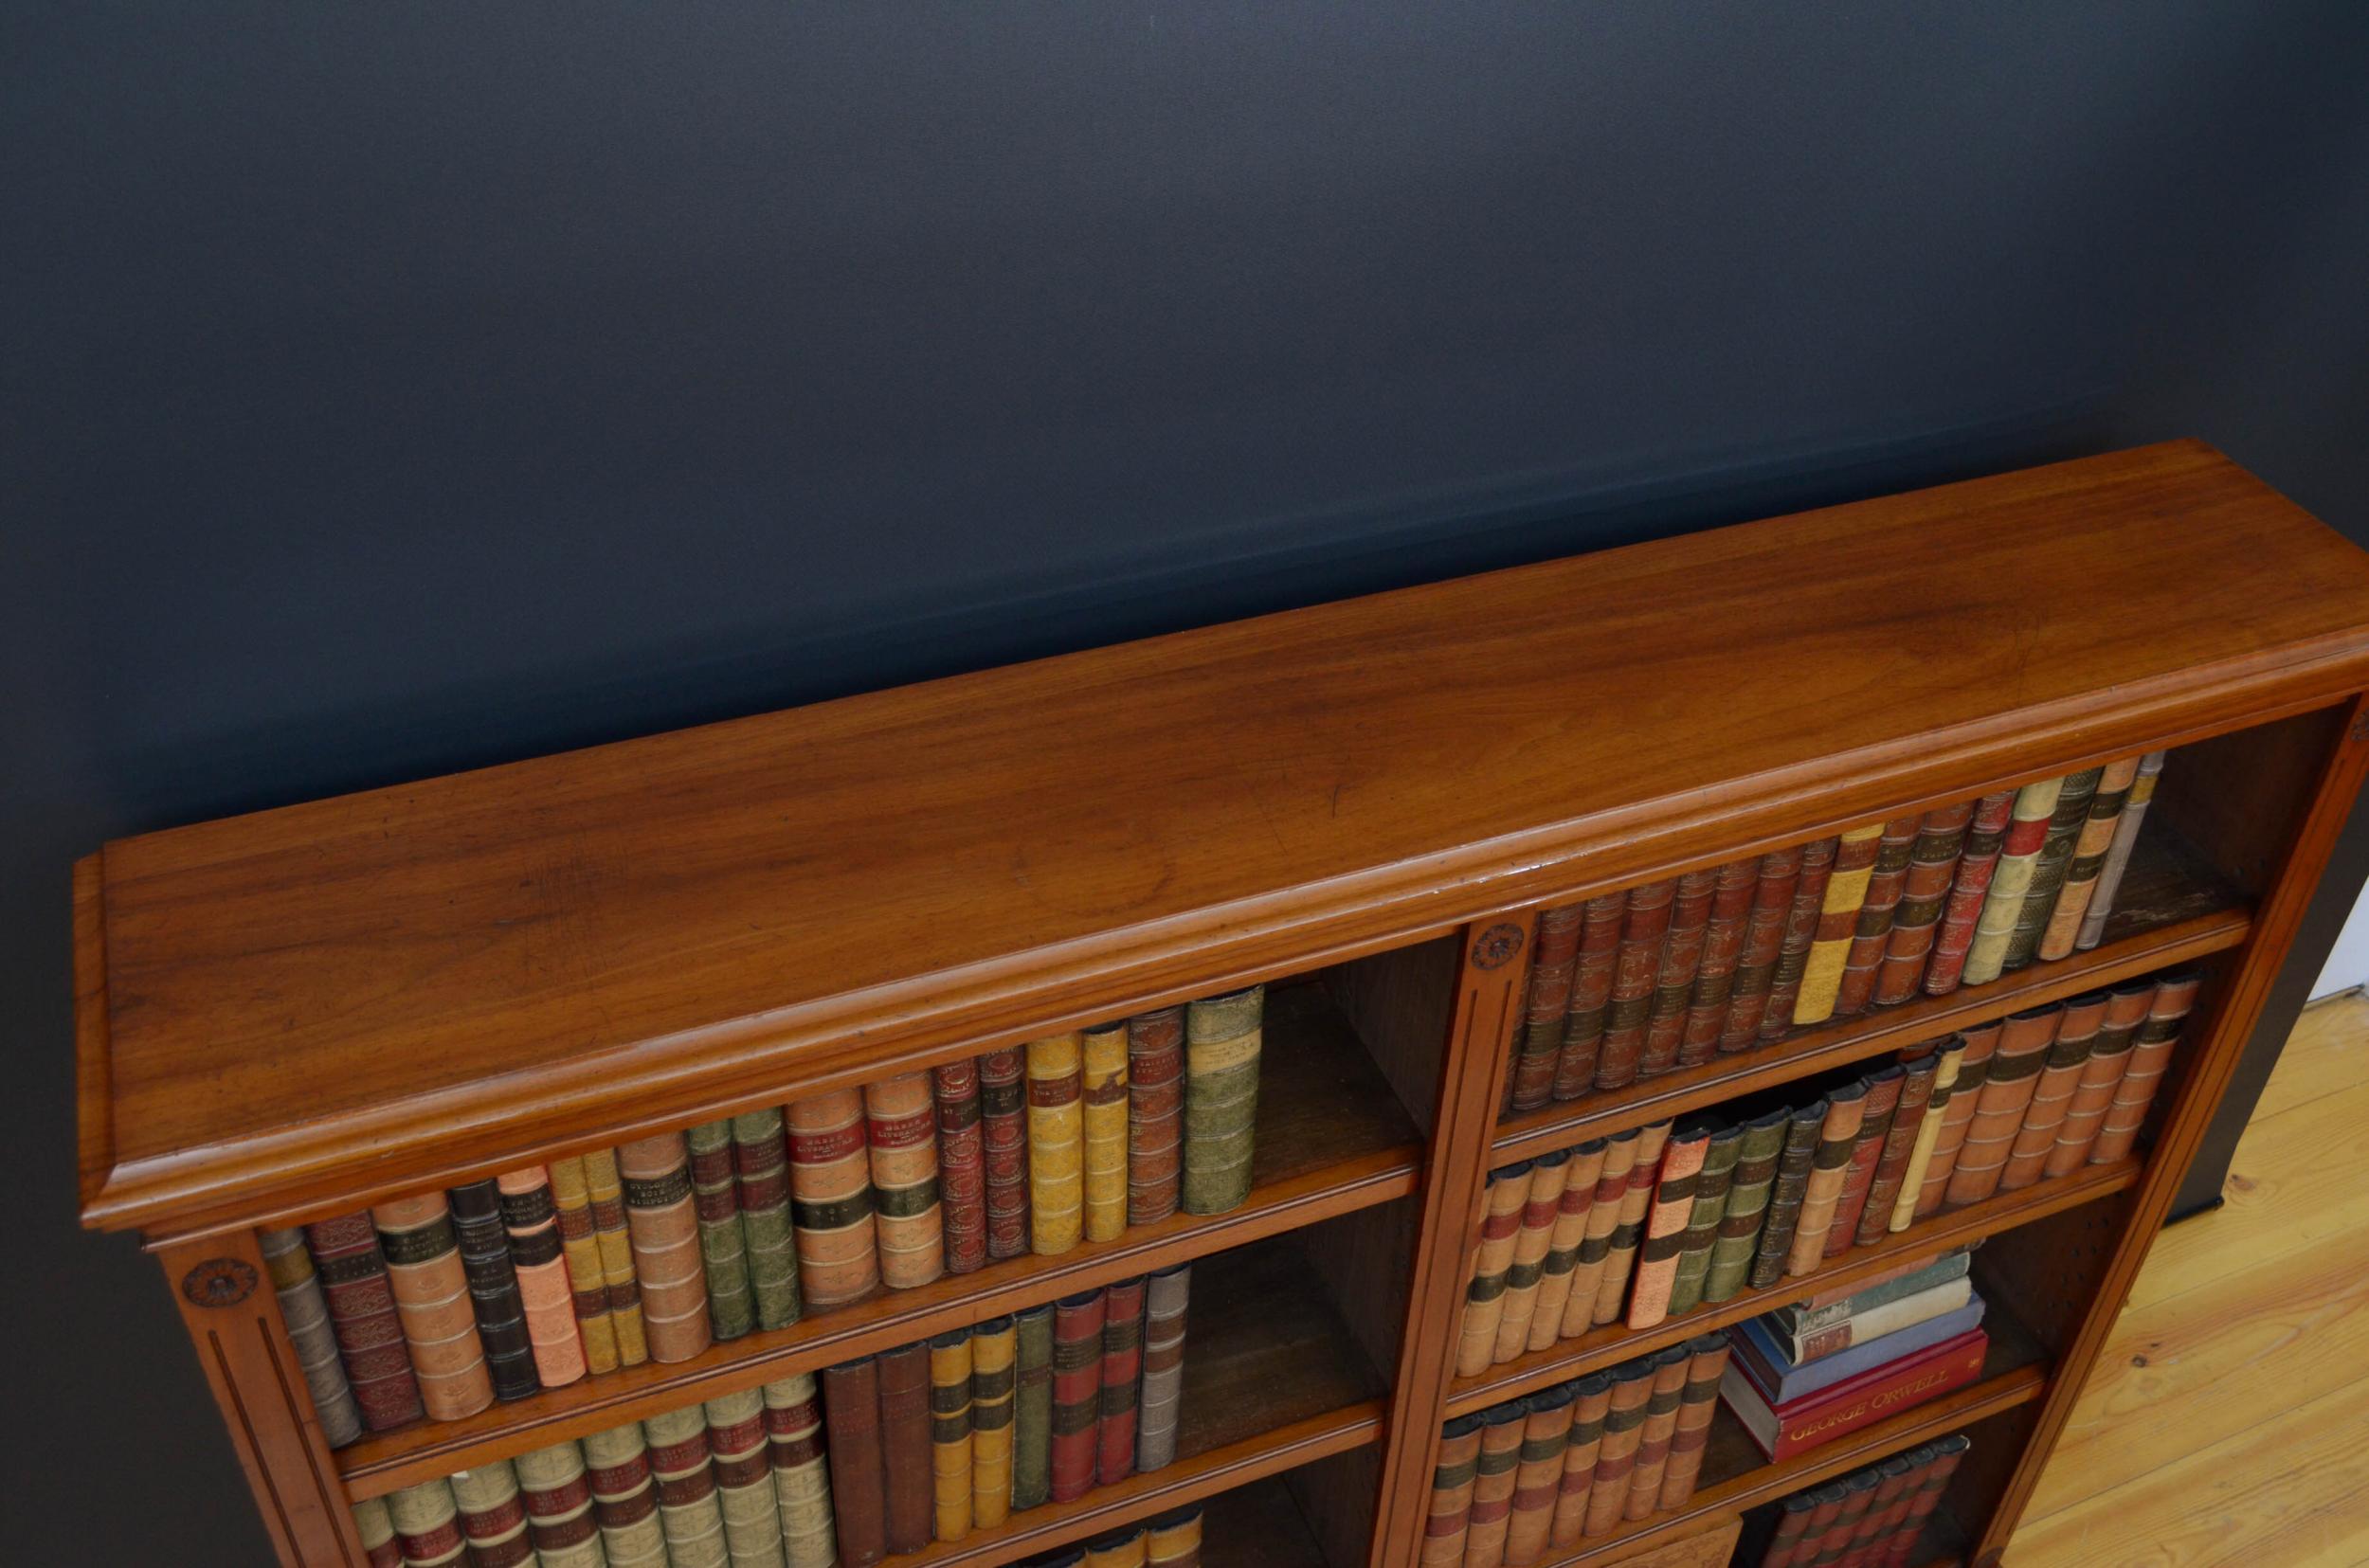 Sn5014 attraktives offenes viktorianisches Bücherregal aus massivem Nussbaumholz, mit einer Platte aus gemasertem Nussbaumholz mit profilierter Kante über zwei offenen Abschnitten, die jeweils mit höhenverstellbaren Einlegeböden ausgestattet sind